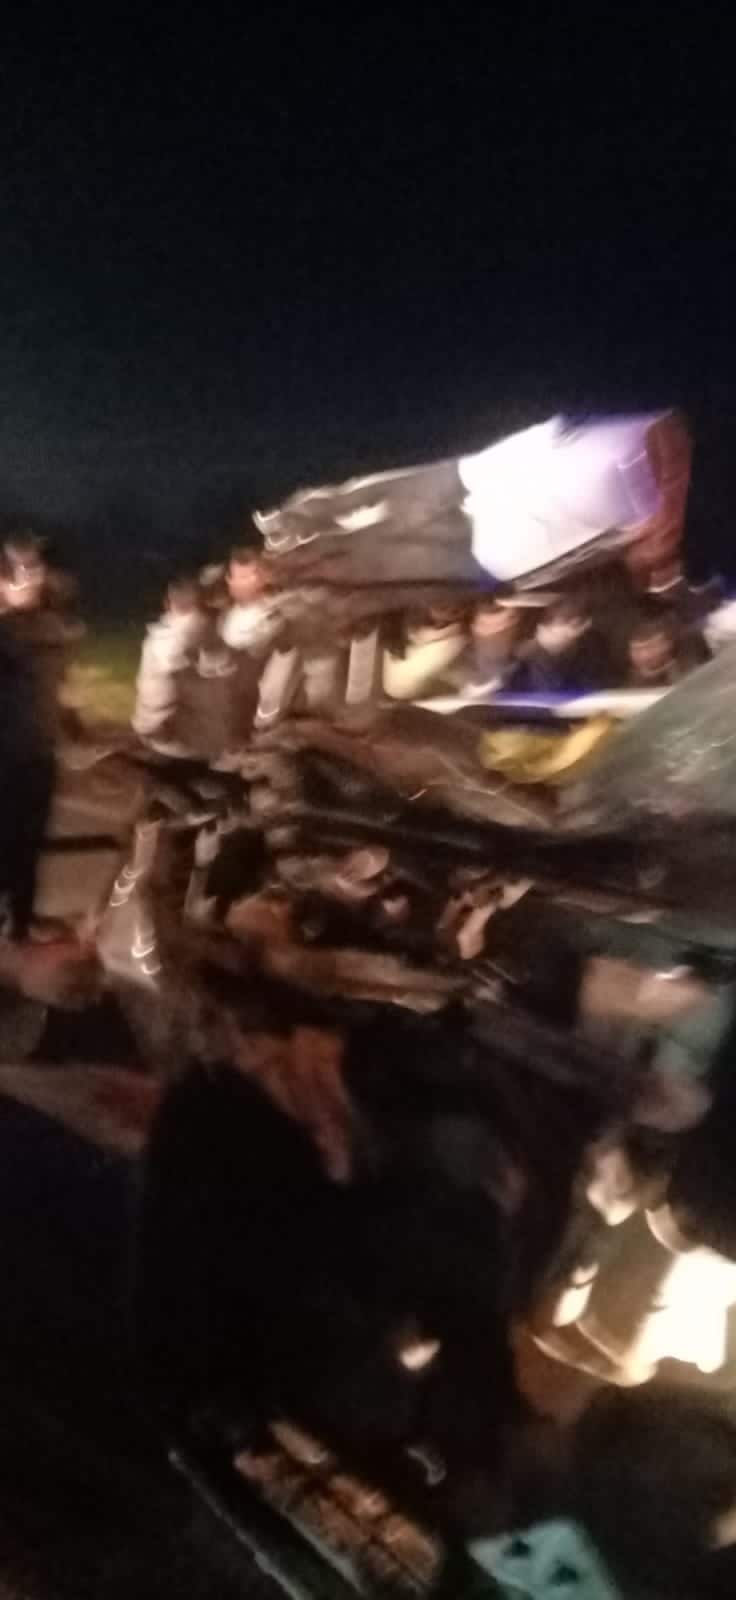 5 killed in tragic accident on Bagodra Highway બગોદરા હાઈવે પર ગમખ્વાર અકસ્માતમાં 5નાં મોત, ઠાકોર પરિવાર માતાજીના દર્શને જતો હતો ને મોત ભેટી ગયું.....